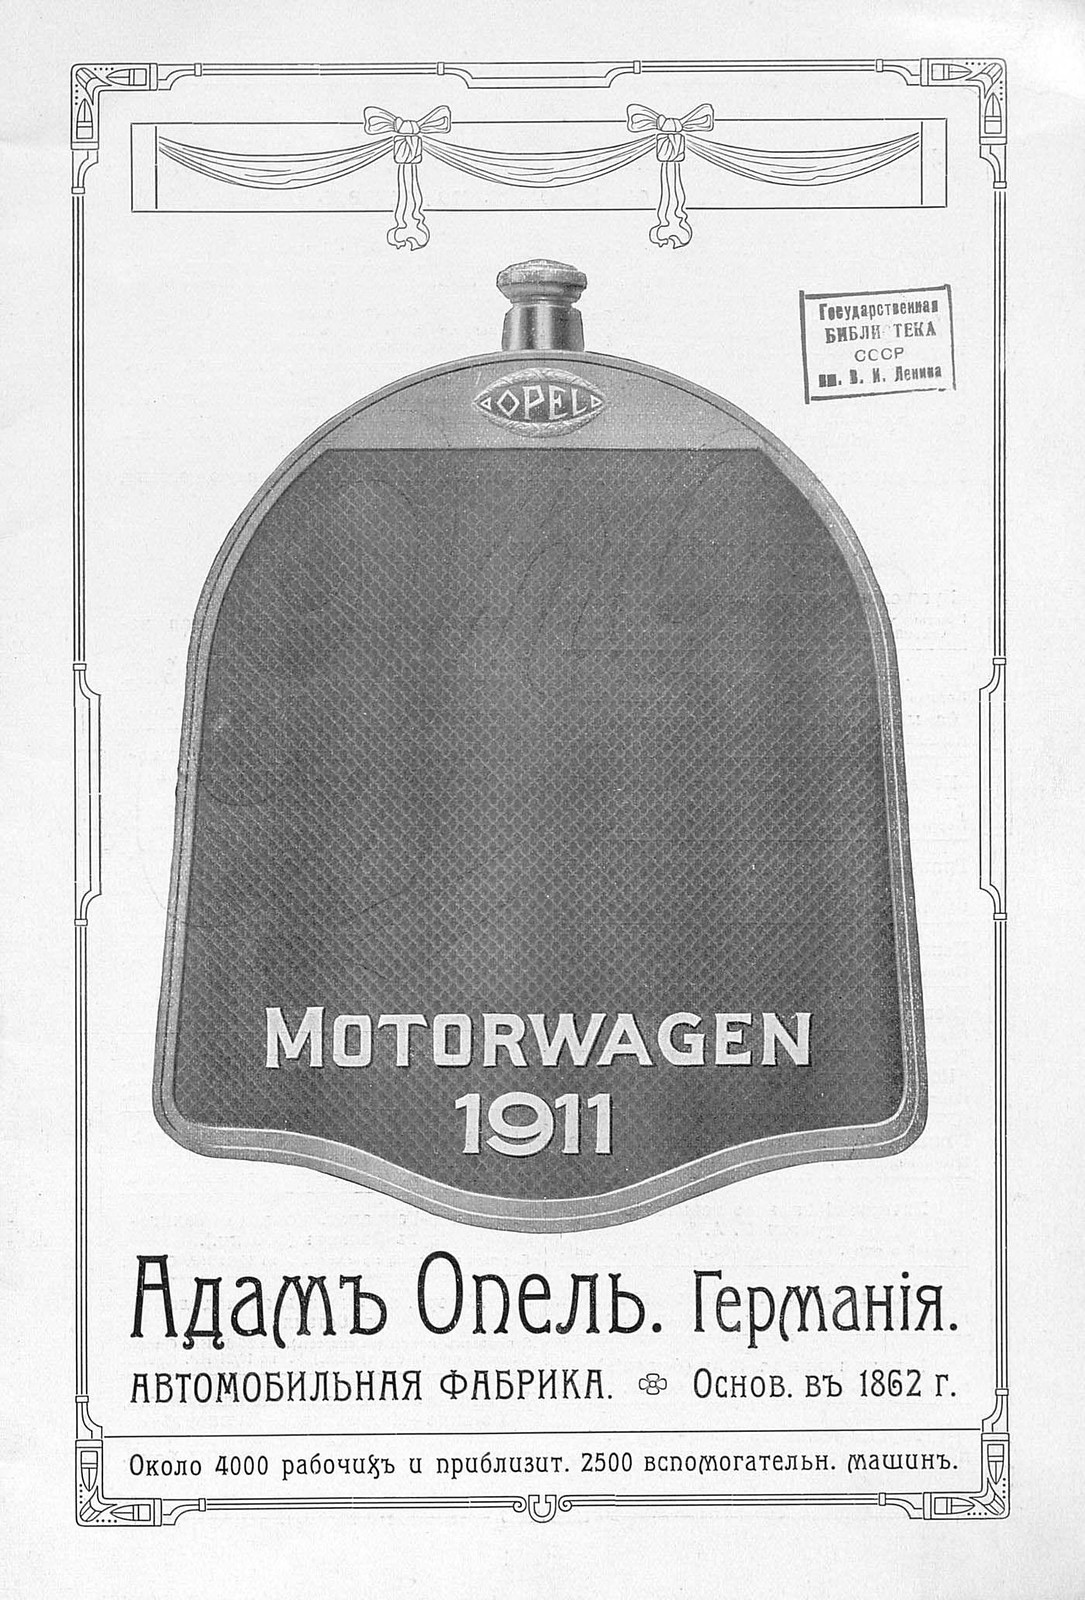 1911. Opel. Склад автомобилей и гараж в Москве Page_00002